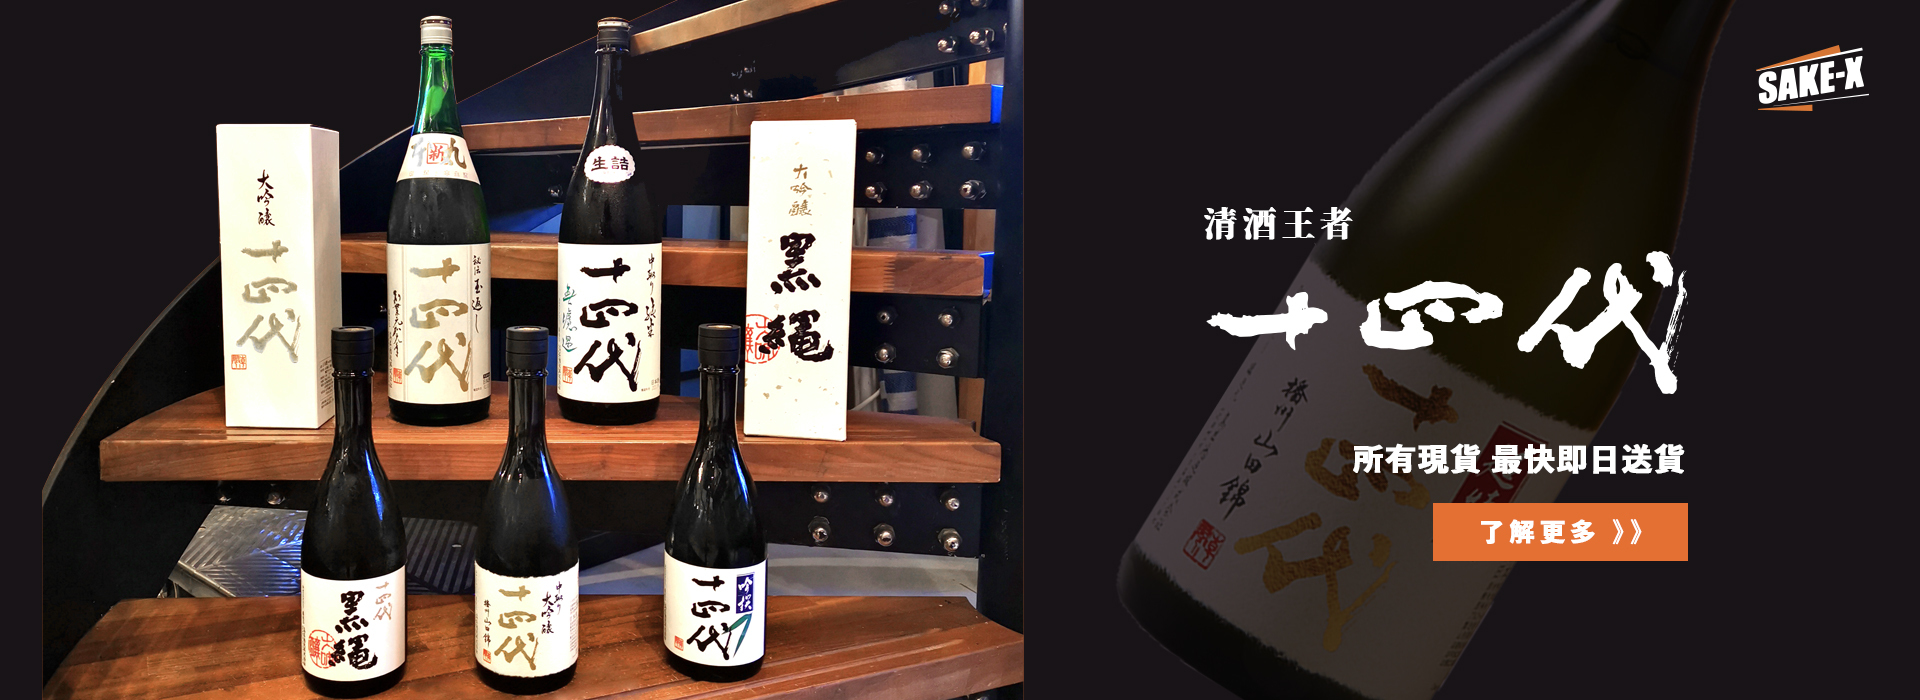 清酒流行速報】2021上半年SAKETIME TOP 10日本清酒排名出爐！